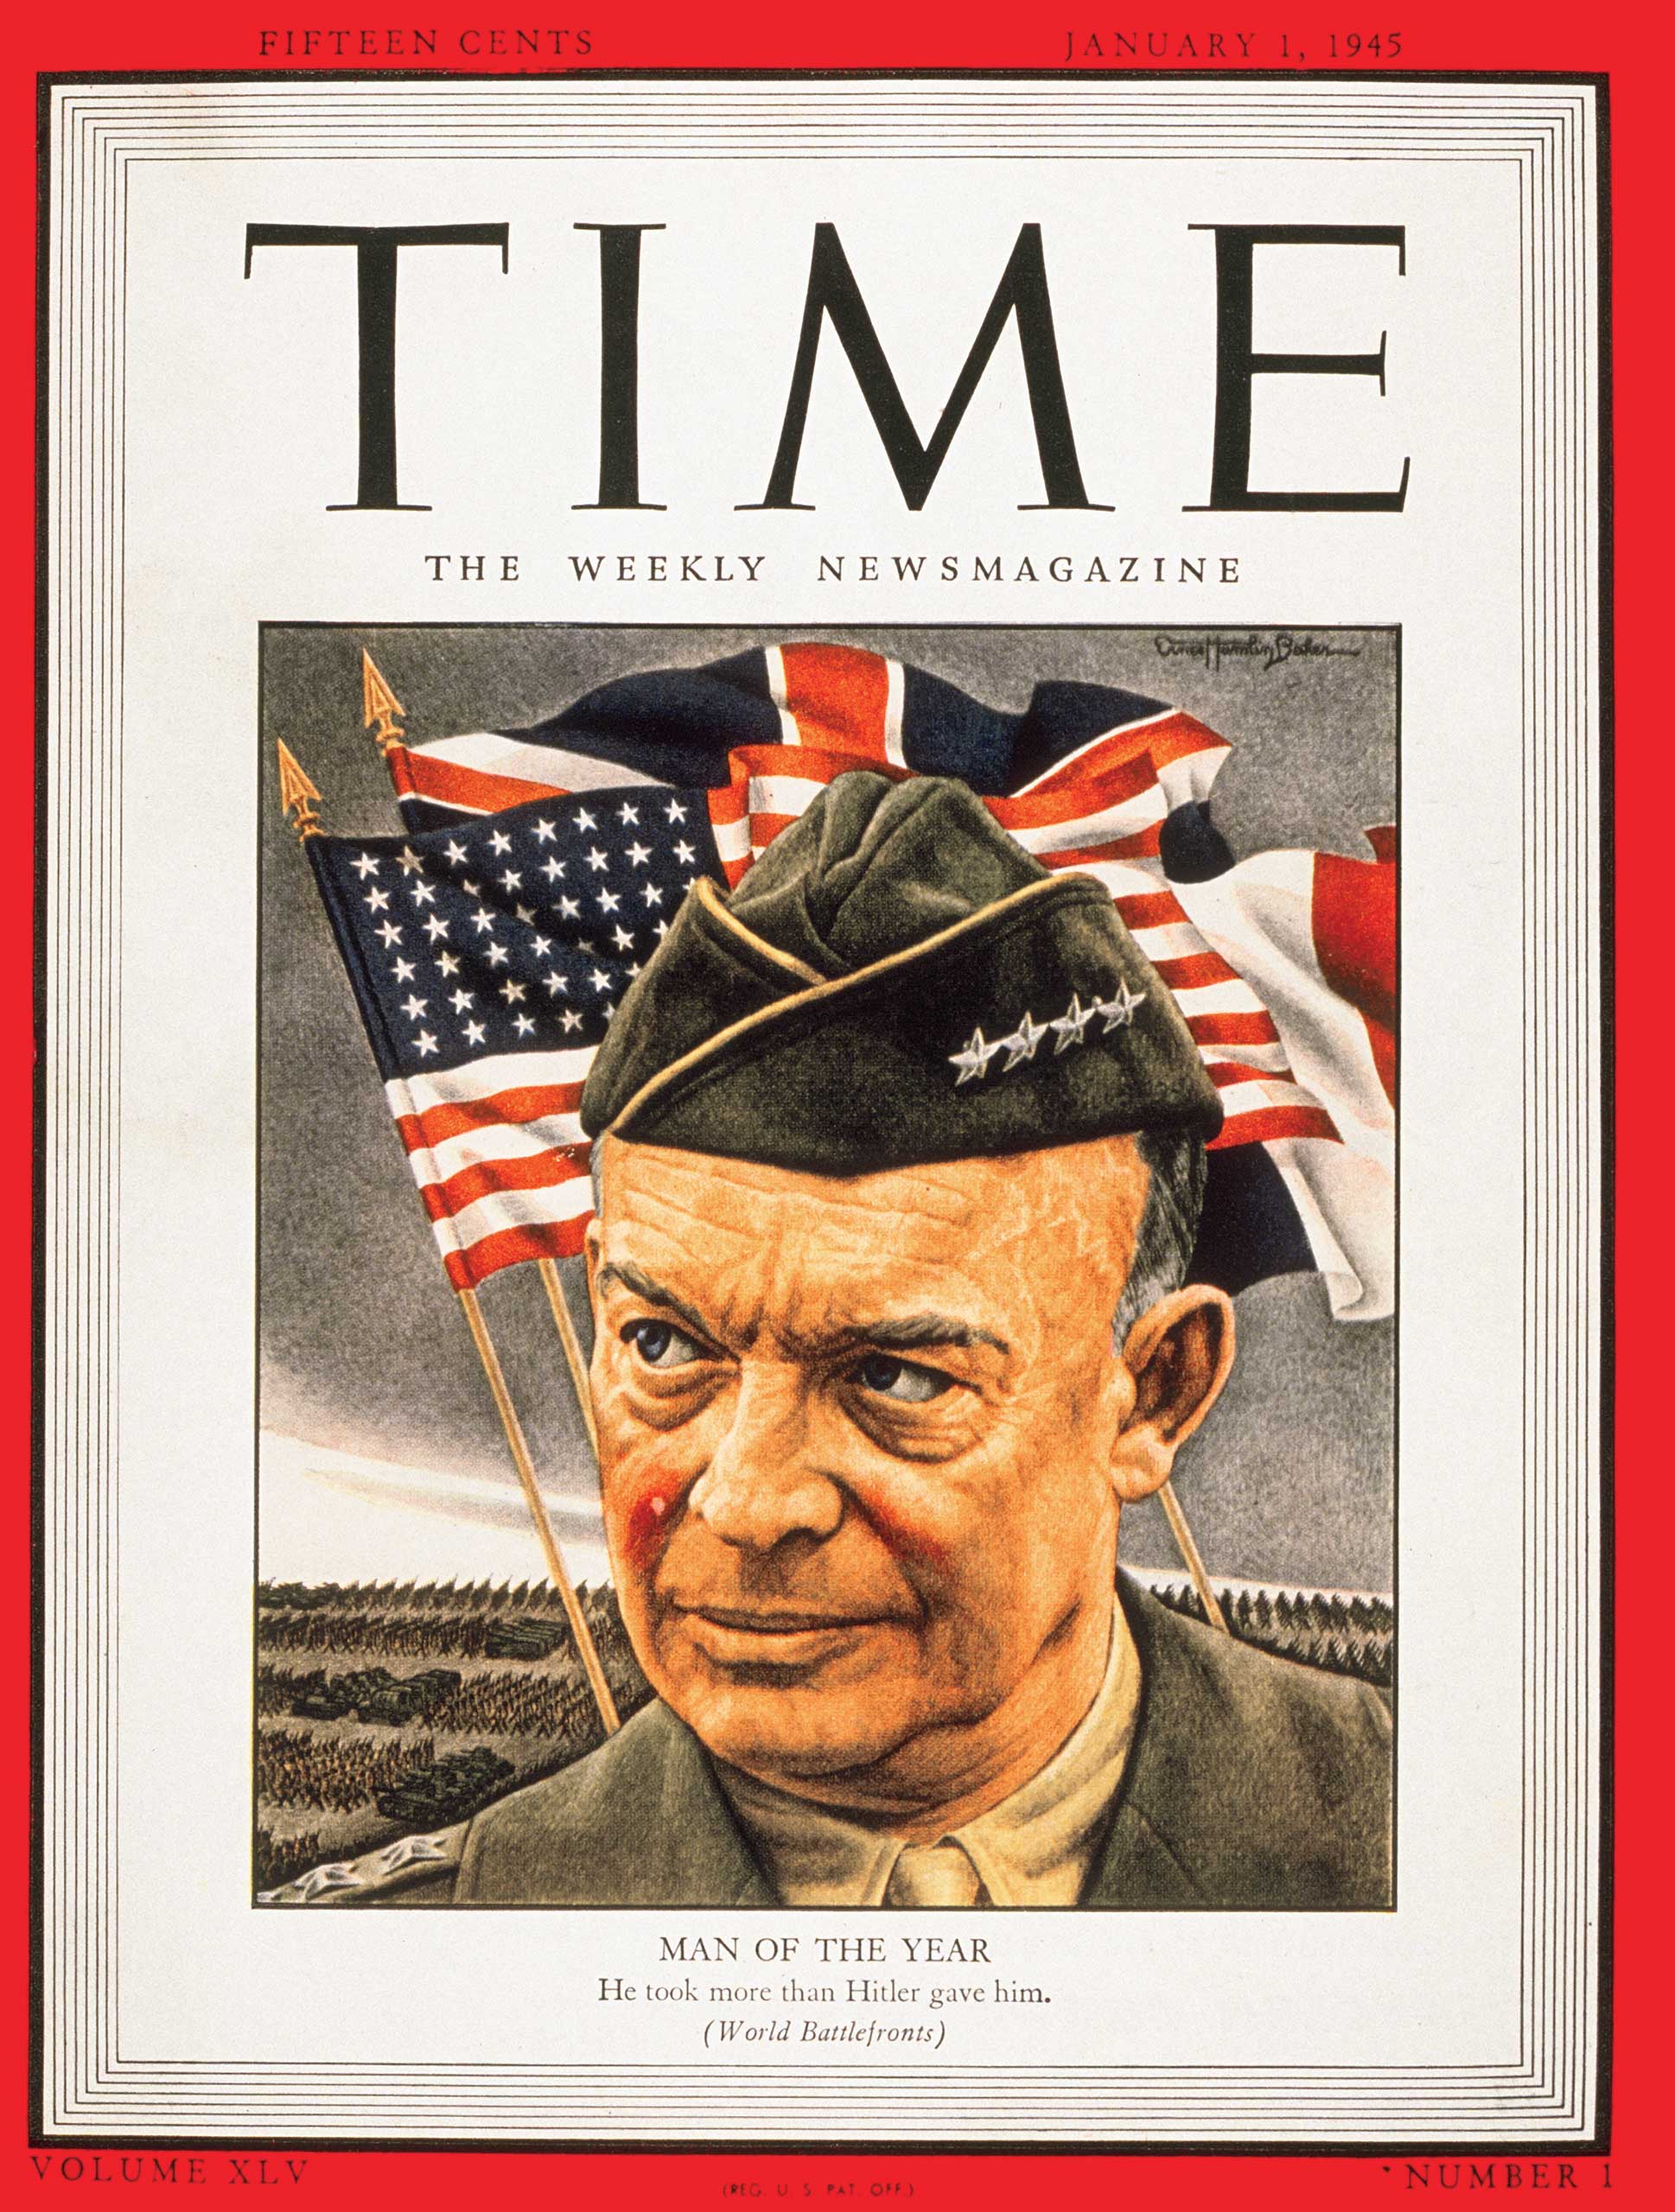 1944: Dwight D. Eisenhower